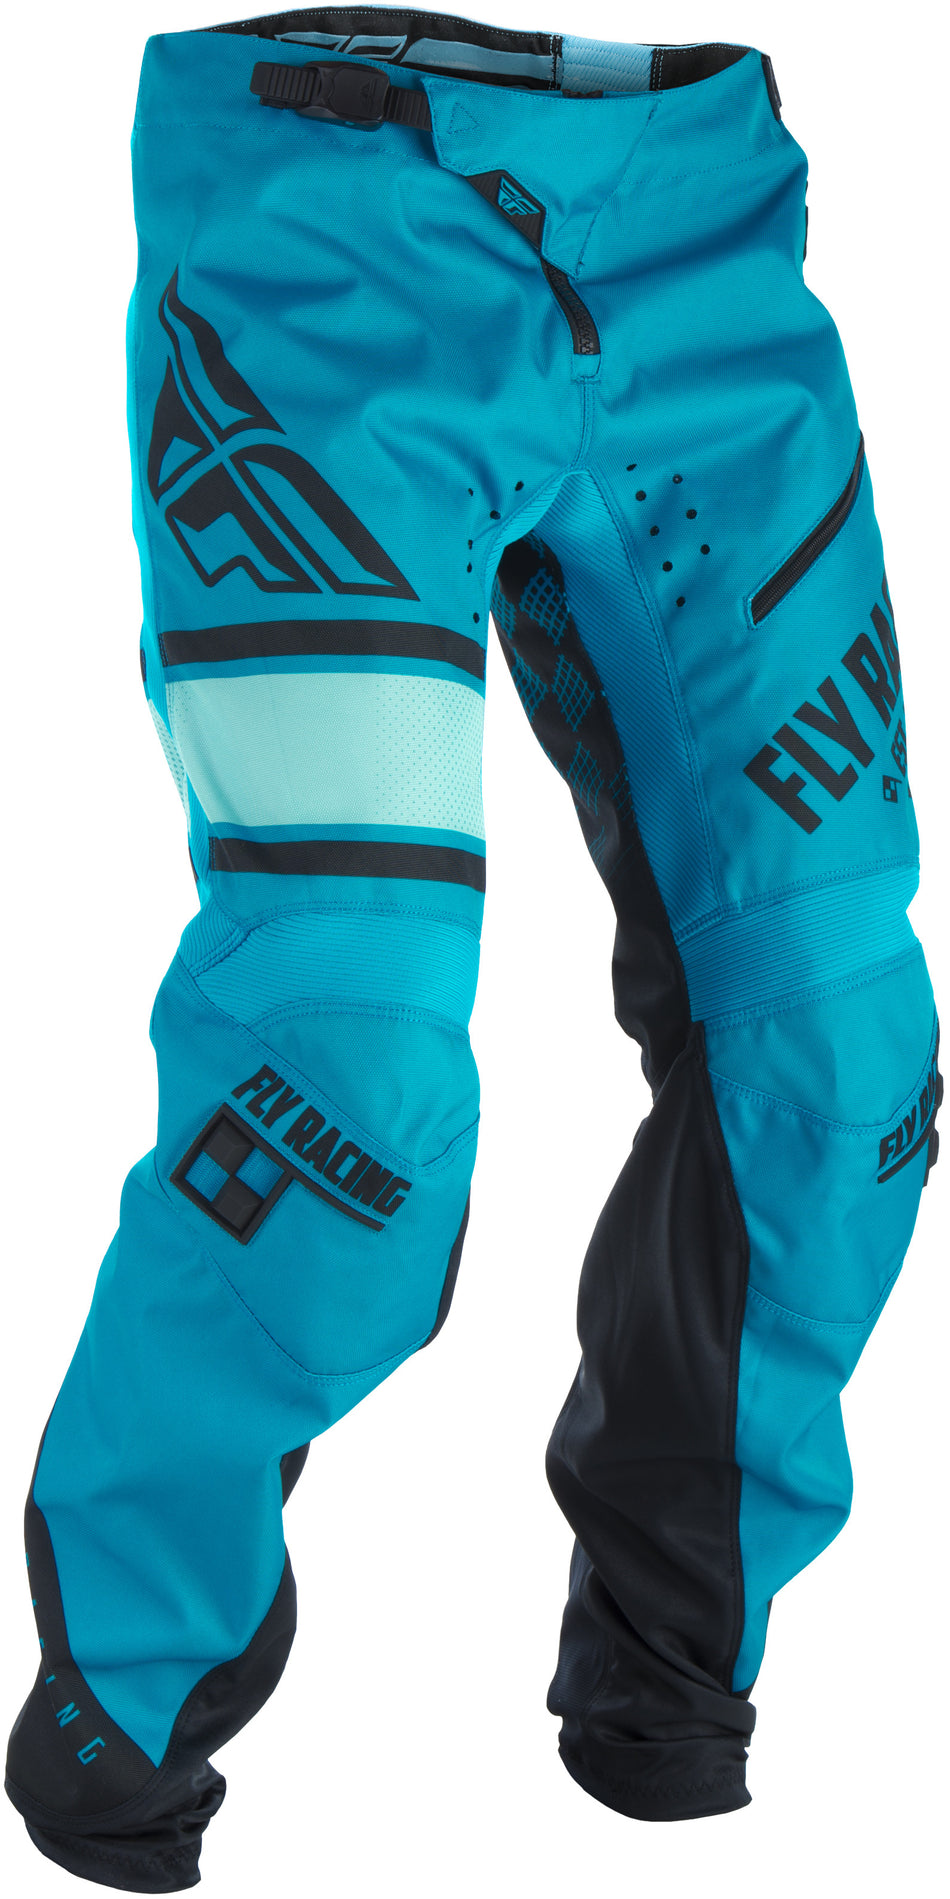 FLY RACING Kinetic Era Bicycle Pants Blue/Black Sz 30 371-02130